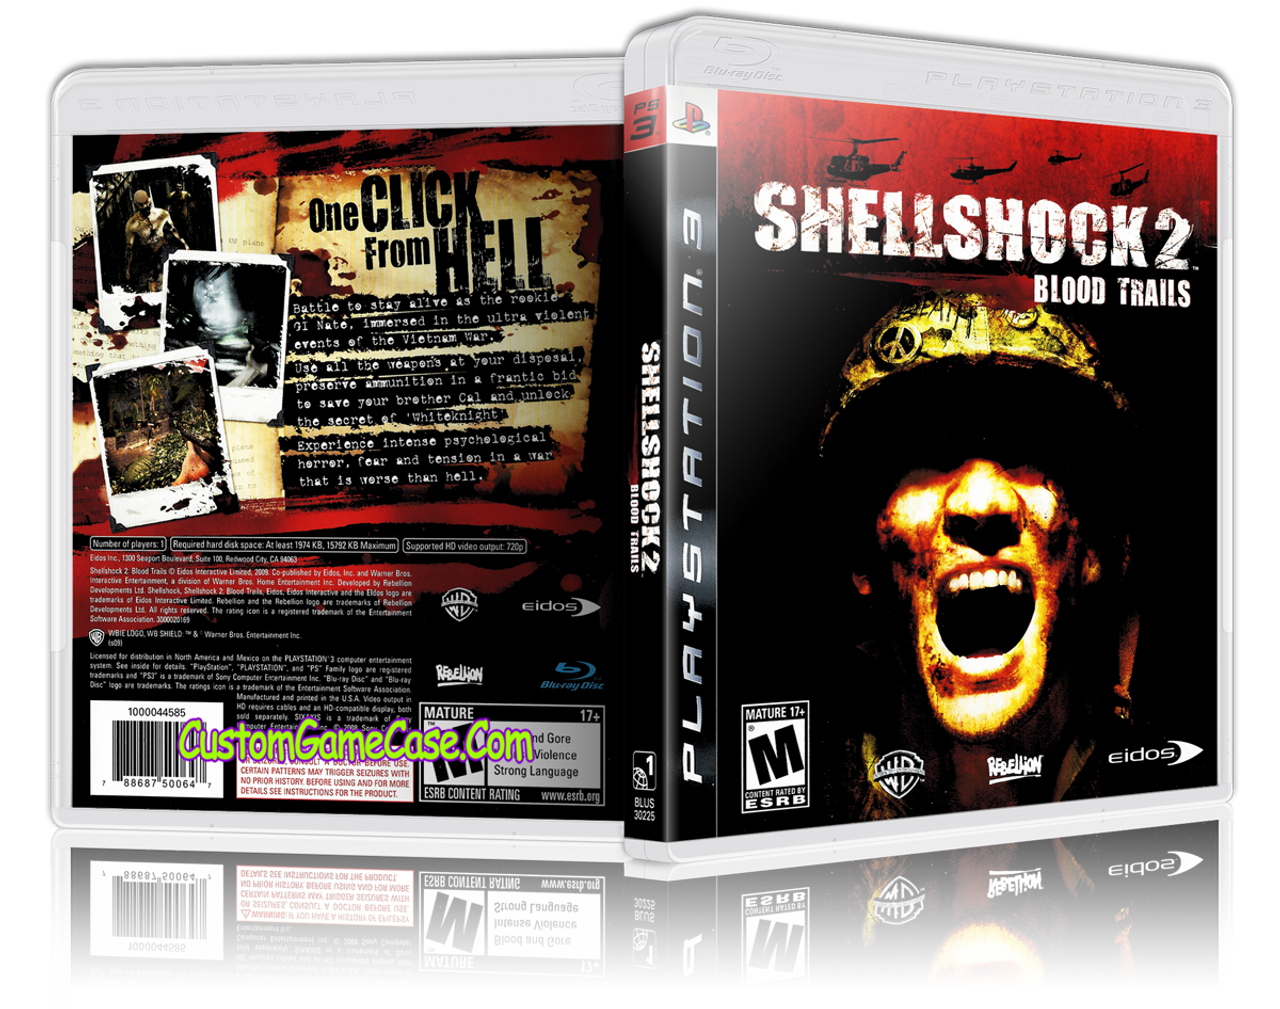 Shellshock - PlayStation